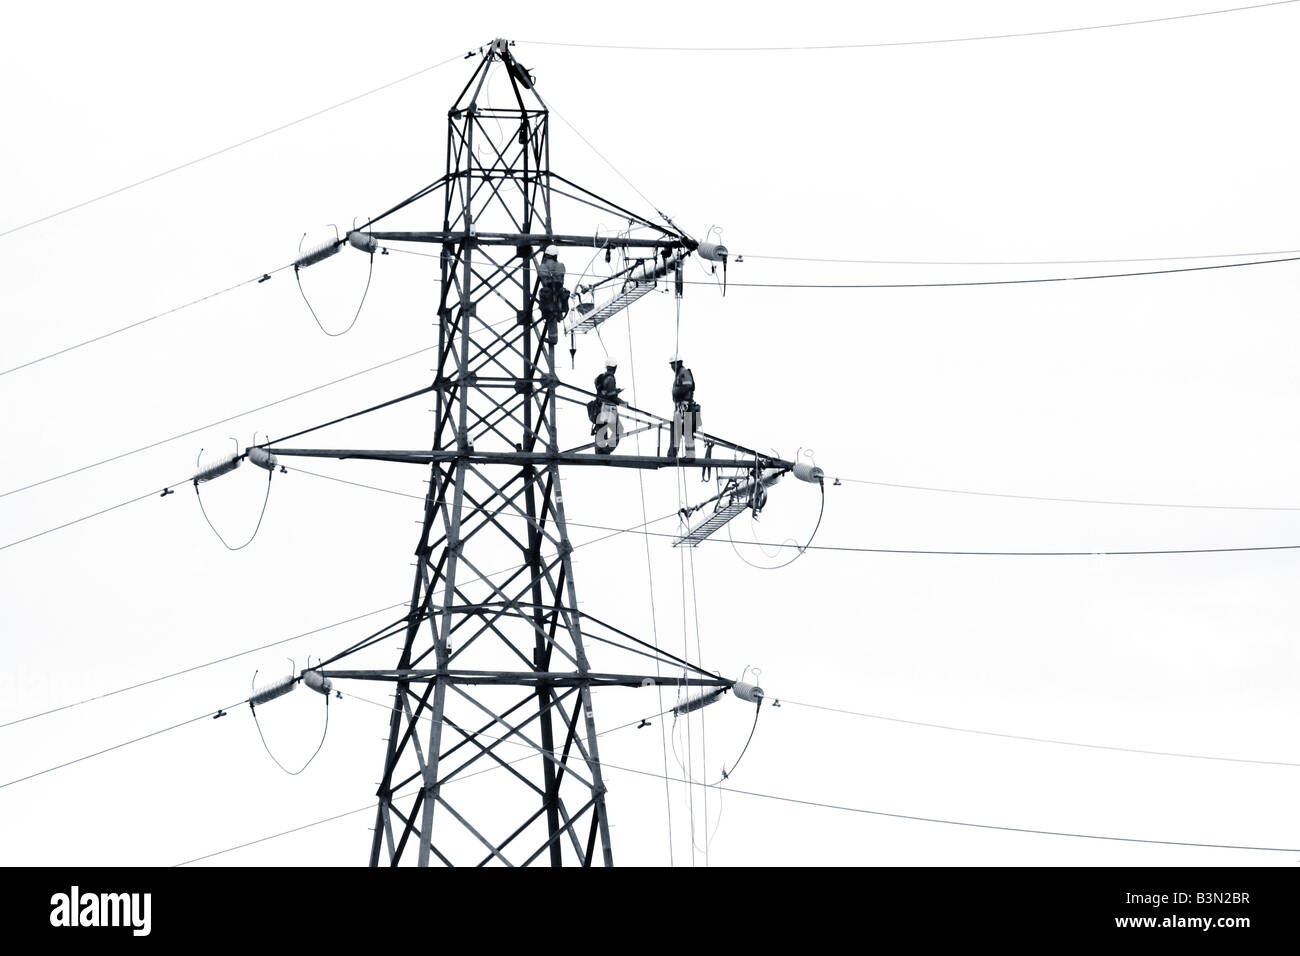 Les hommes travaillant sur un pylône elecricity Banque D'Images